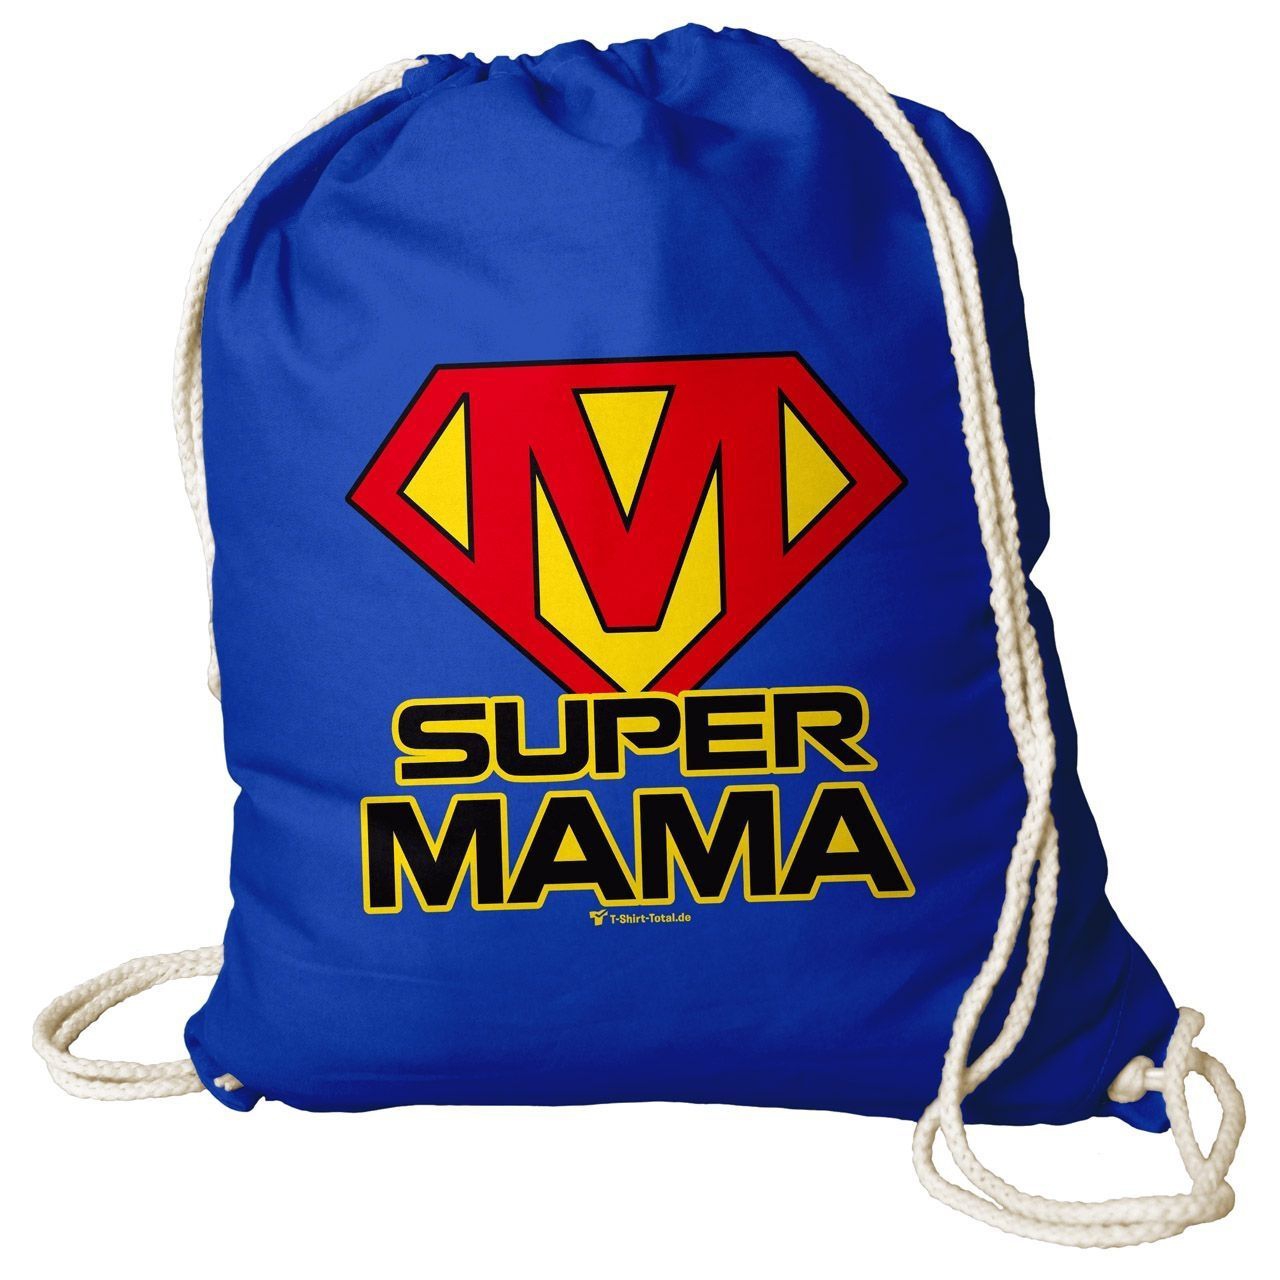 Super Mama Rucksack Beutel royal